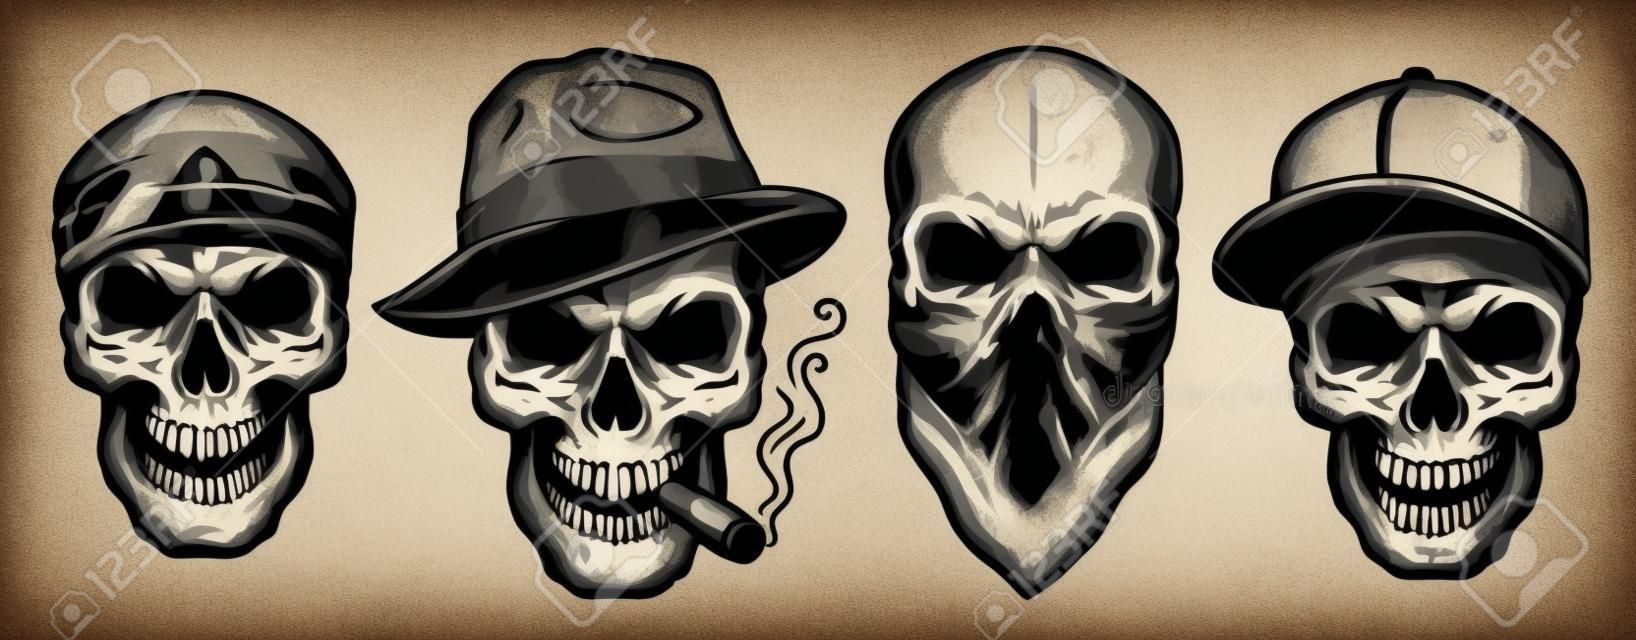 Calaveras en monocromo estilo vintage, gángsters y mafia. Ilustración de vector.